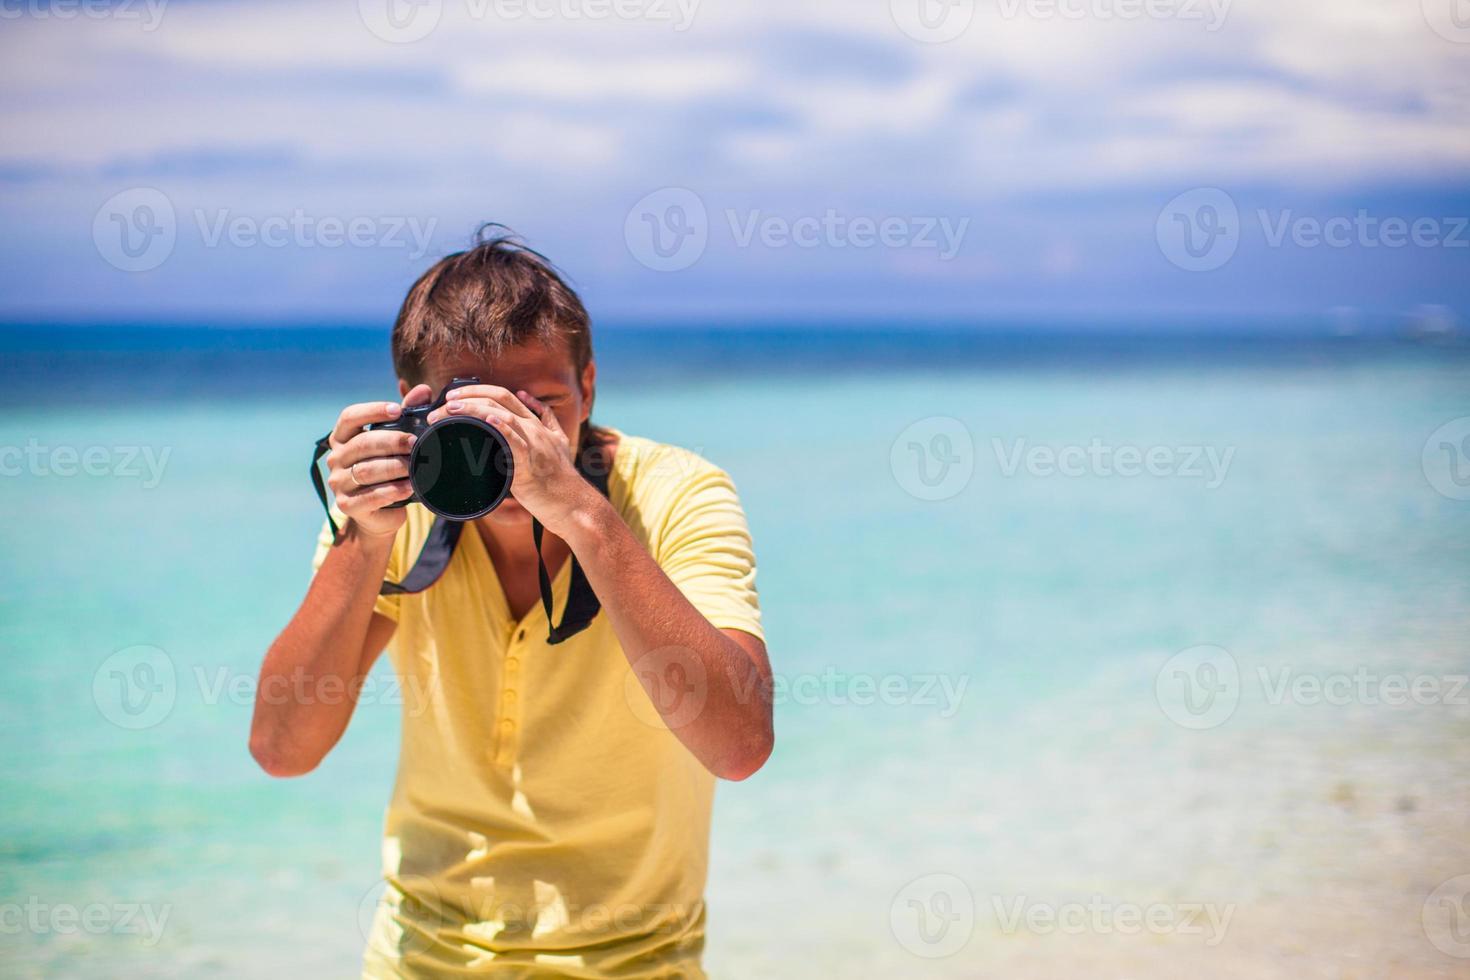 jovem fotografando com a câmera nas mãos em uma praia tropical foto